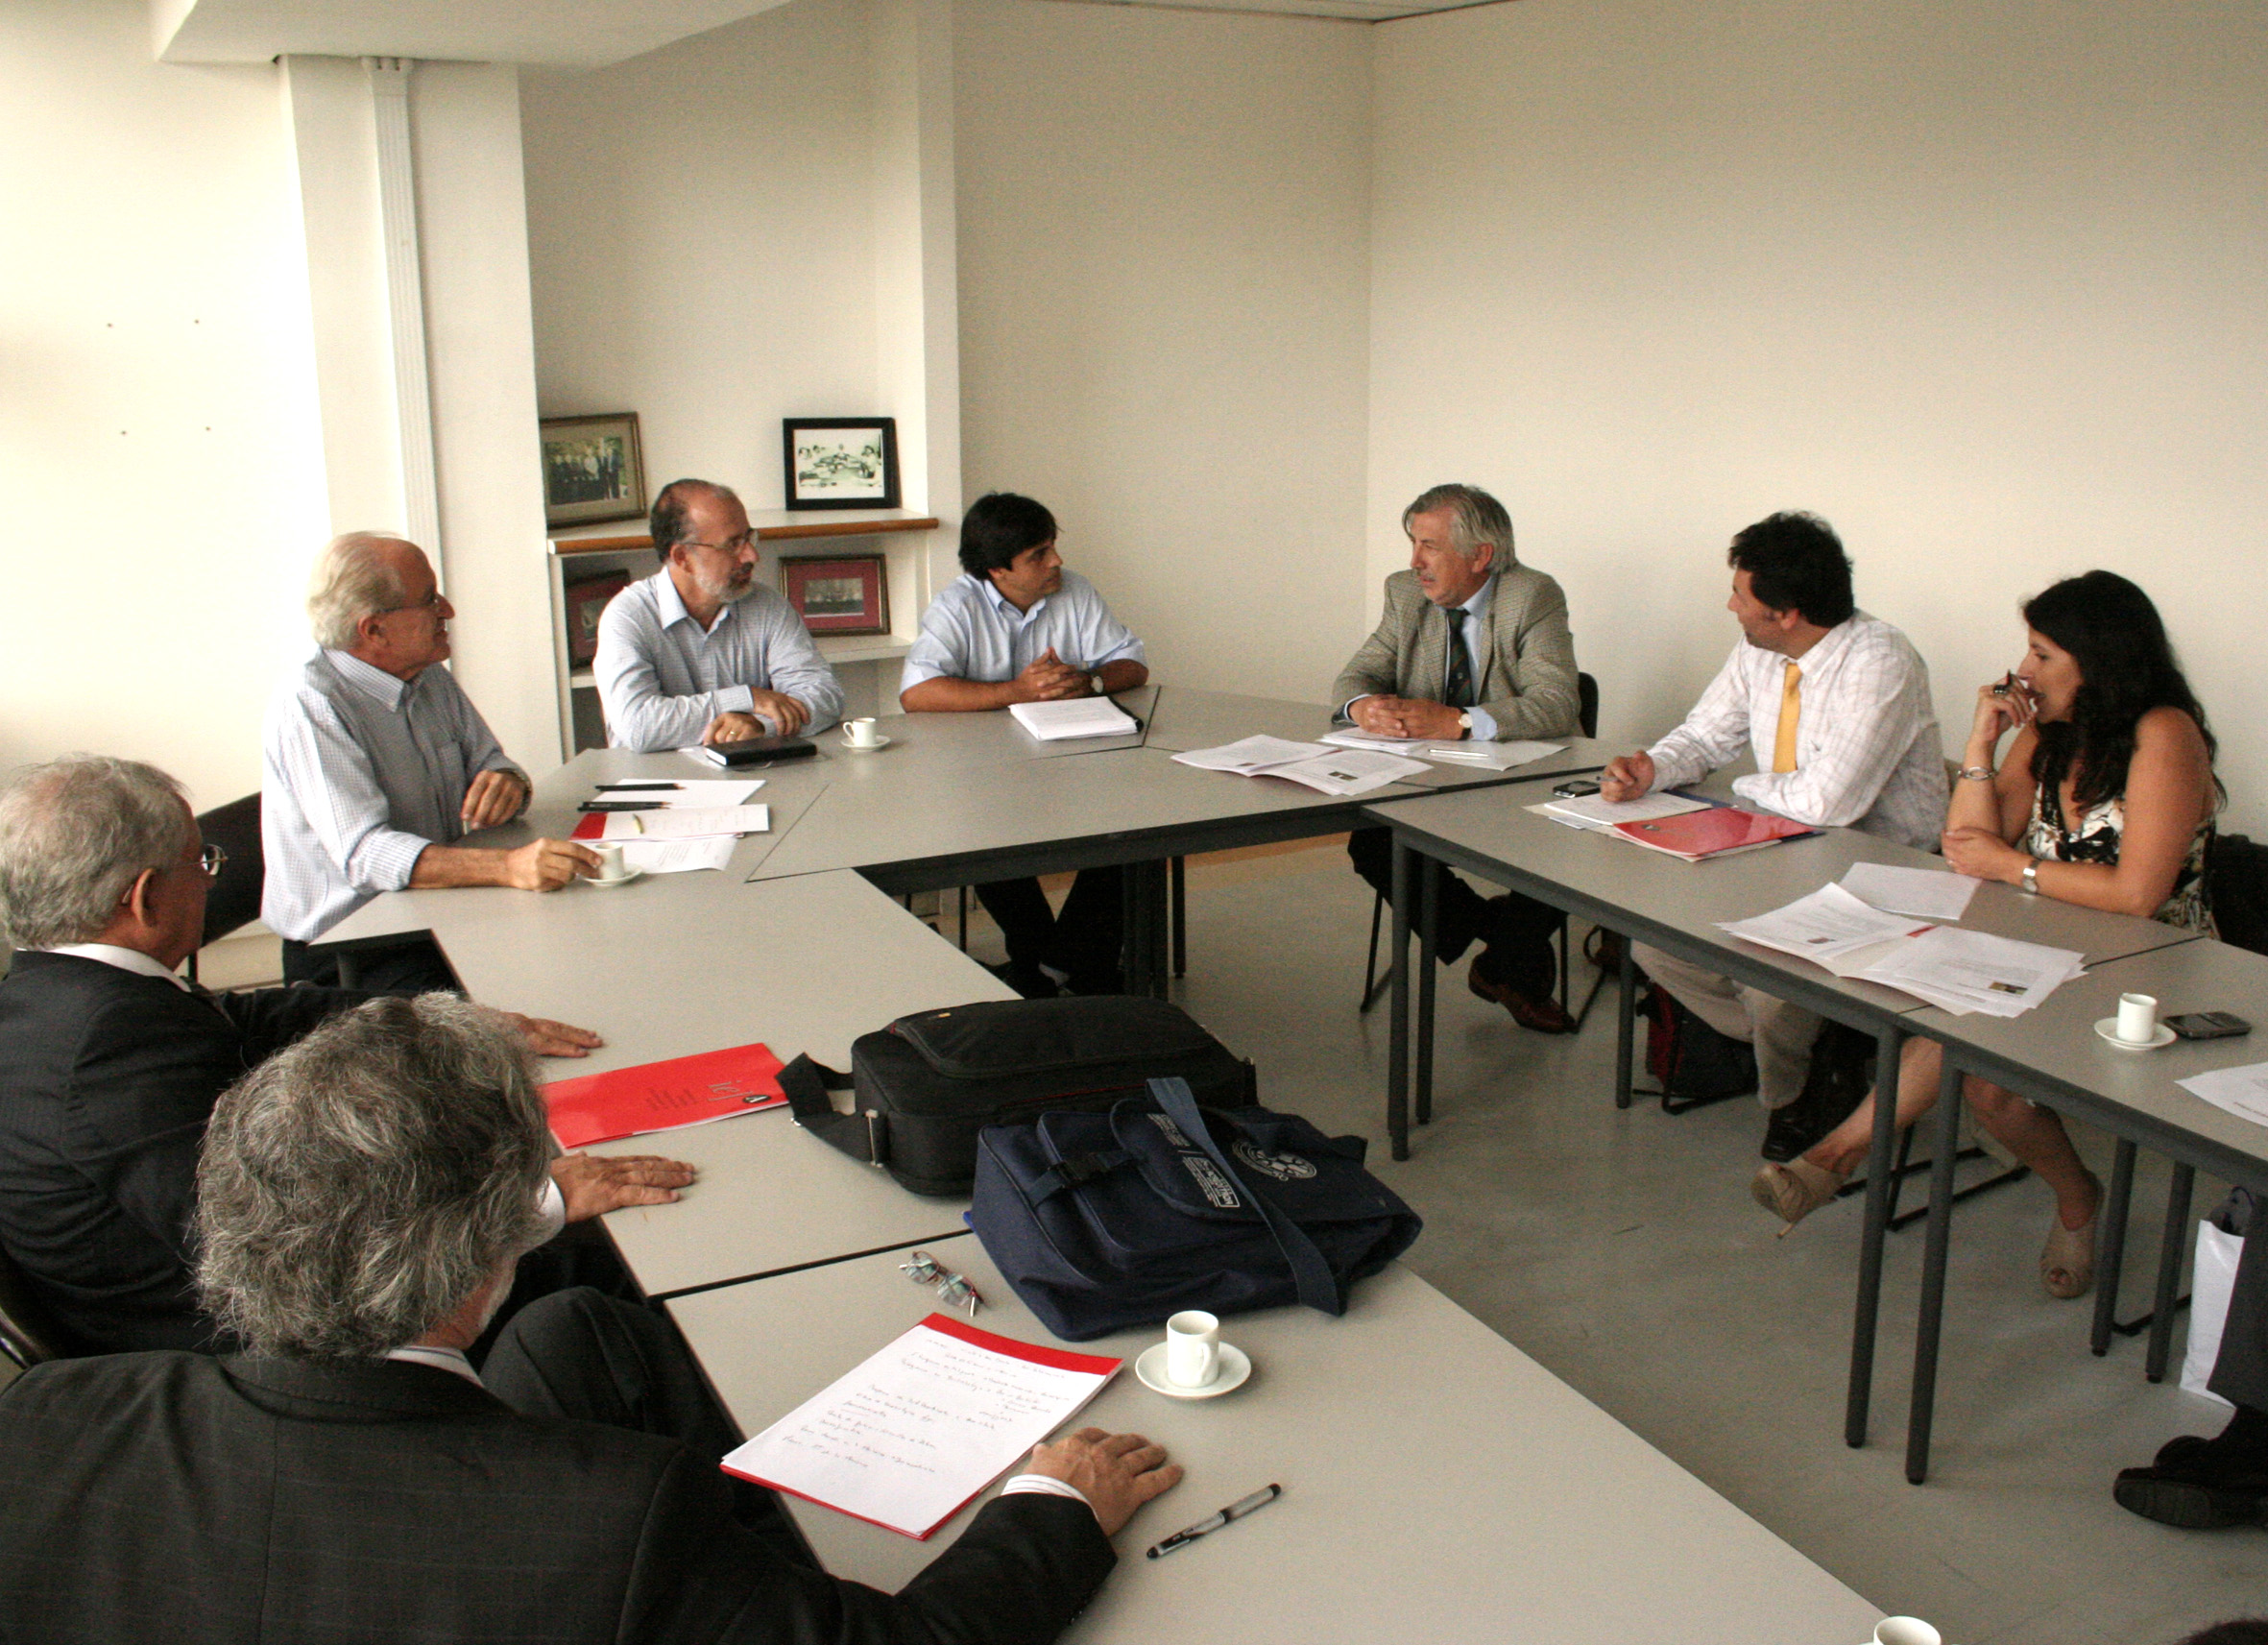 Visita da Delegação da Universidade da Fronteira (Ufro), Chile 